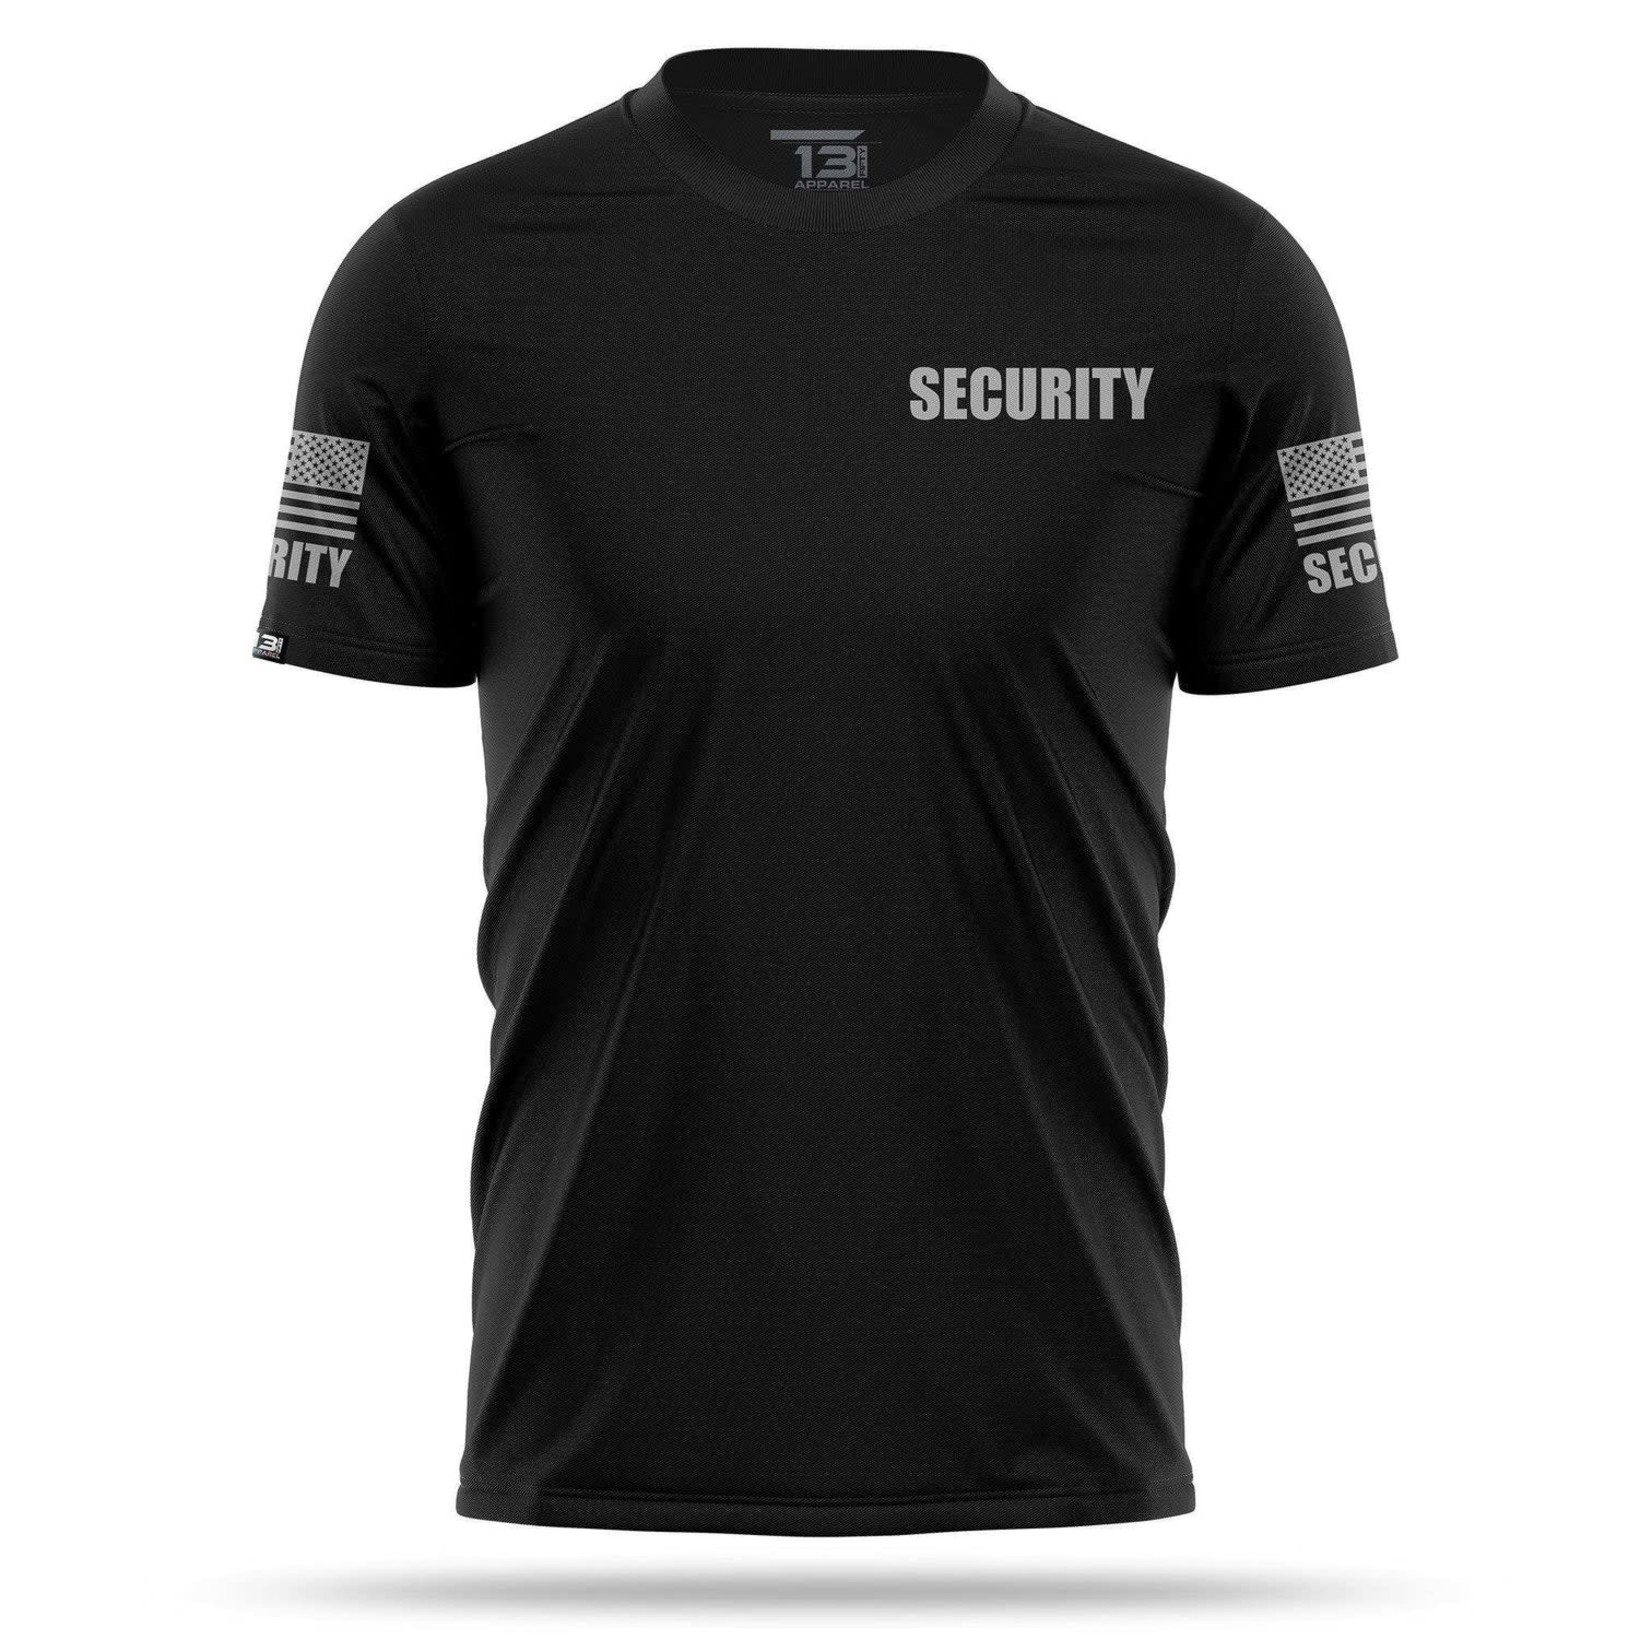 13 Fifty Apparel Men's Security Shirt